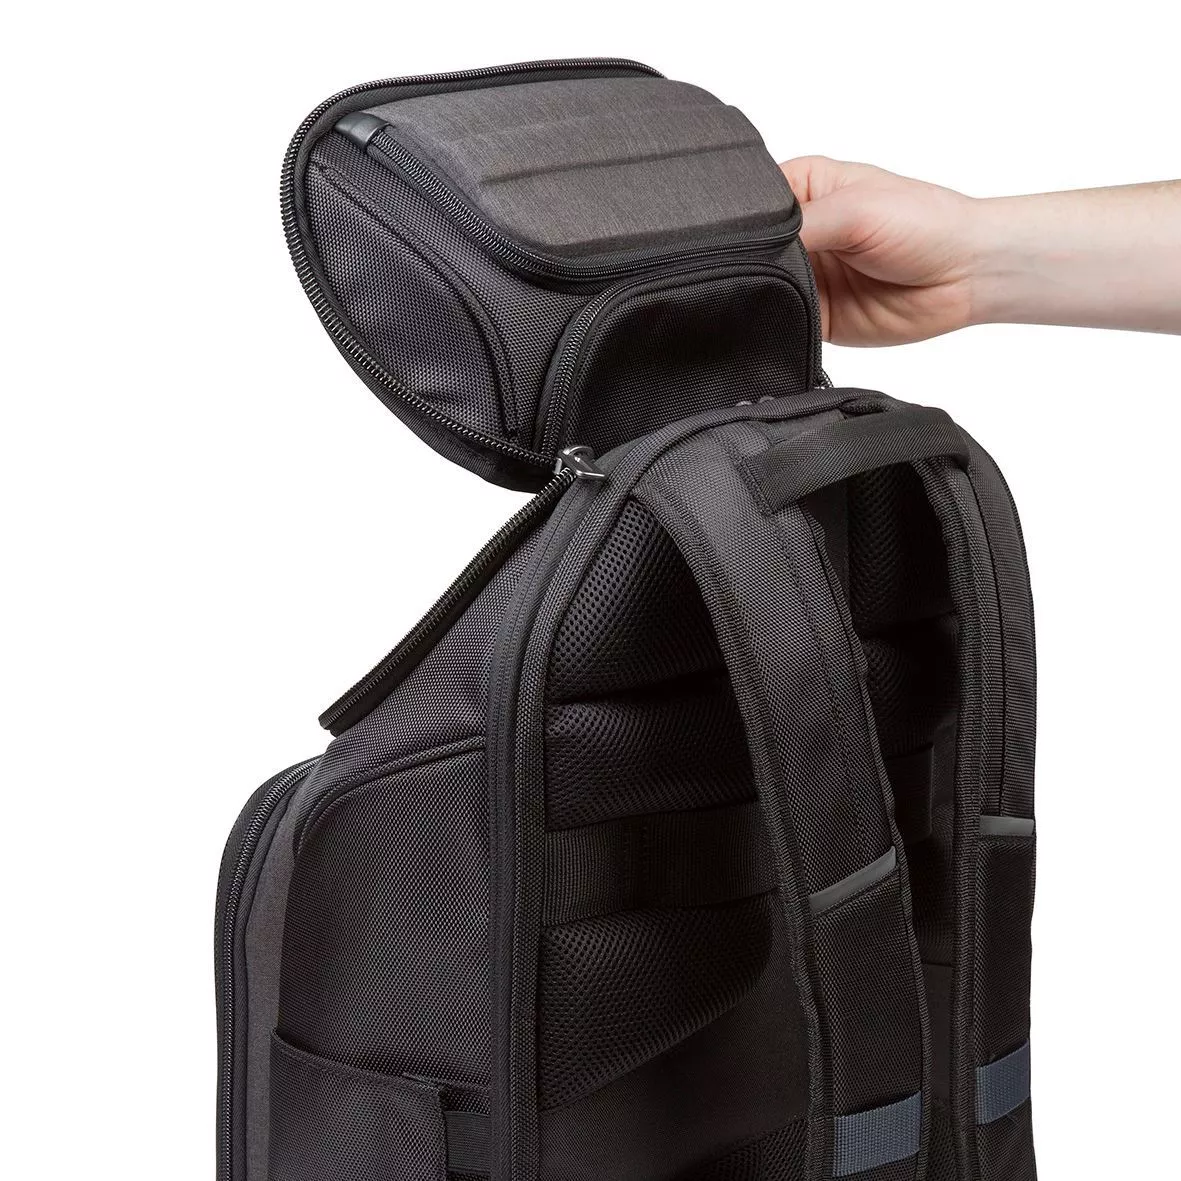 Vente TARGUS CitySmart Professional 15.6inch Laptop Backpack Targus au meilleur prix - visuel 6